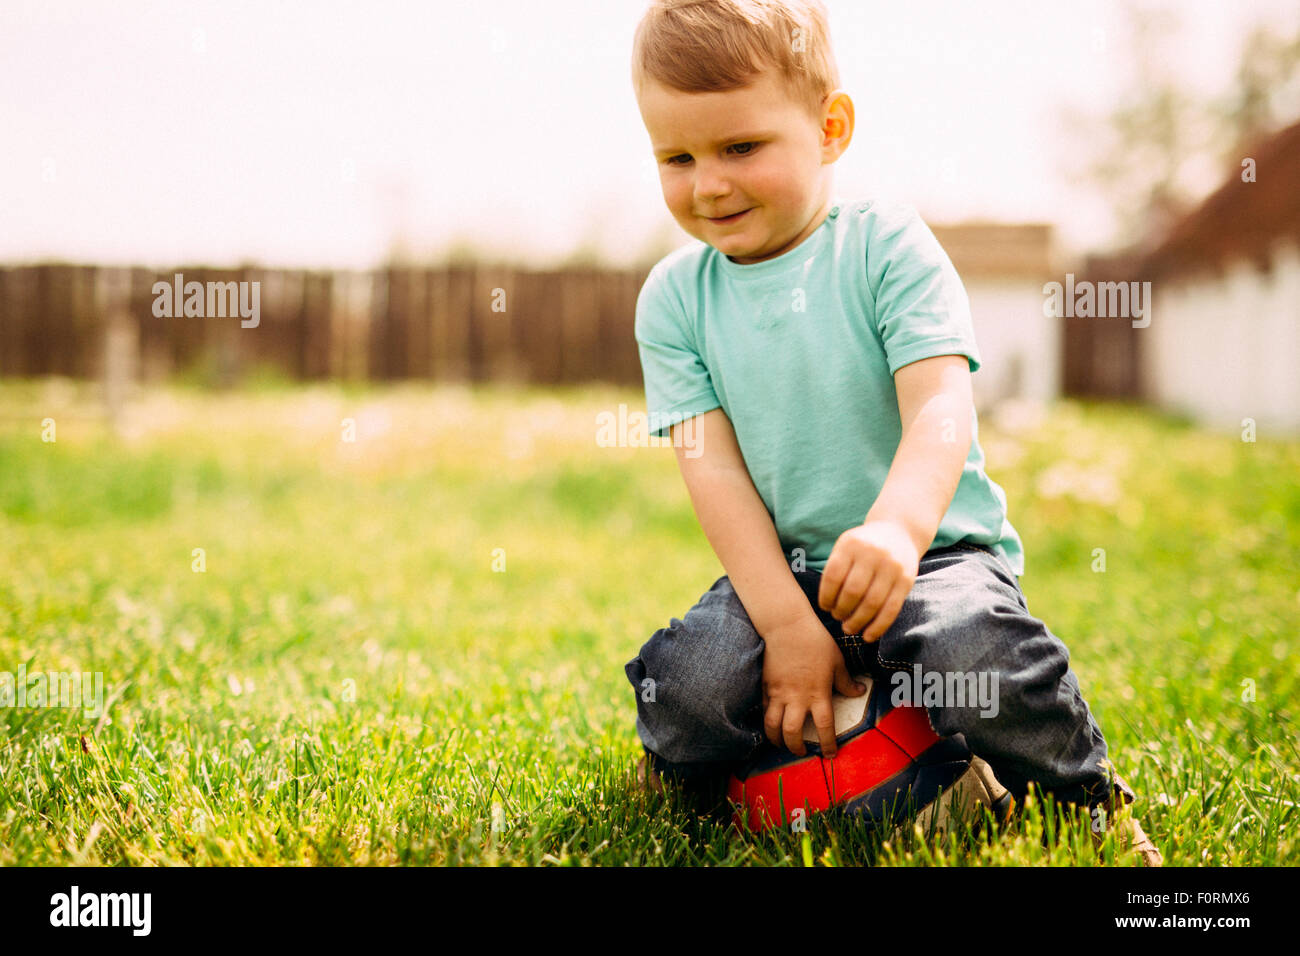 Entzückende kleine Jungen spielen mit einem Fußball im freien Stockfoto